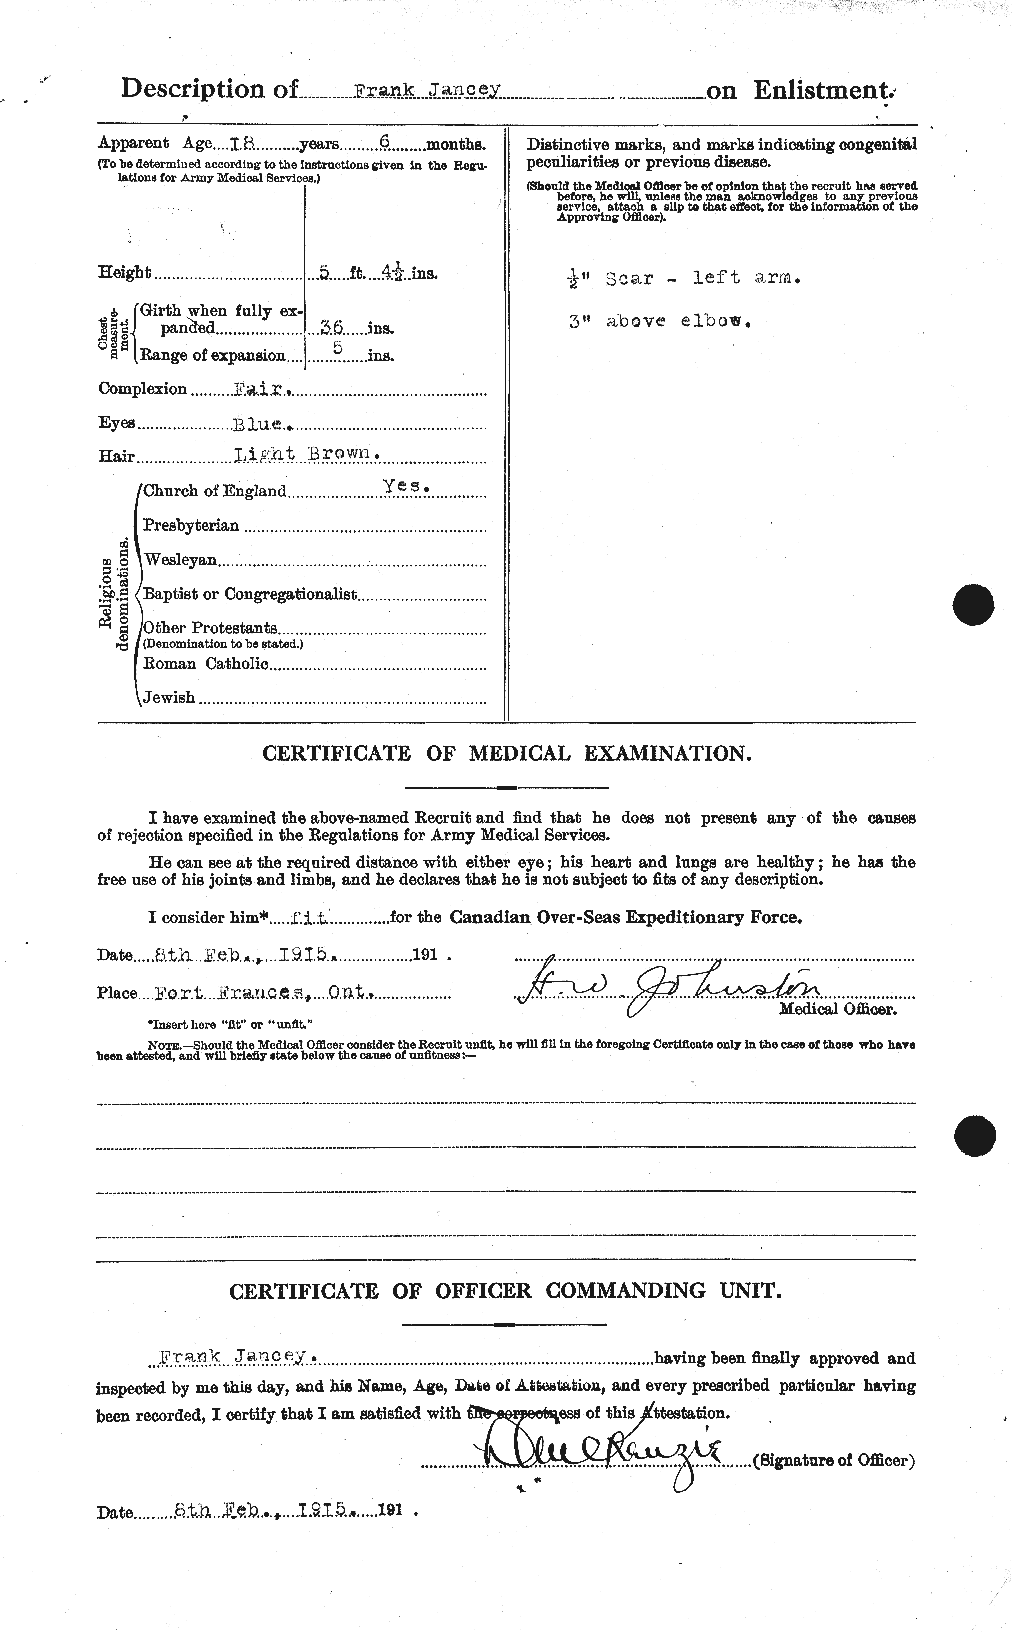 Dossiers du Personnel de la Première Guerre mondiale - CEC 415336b